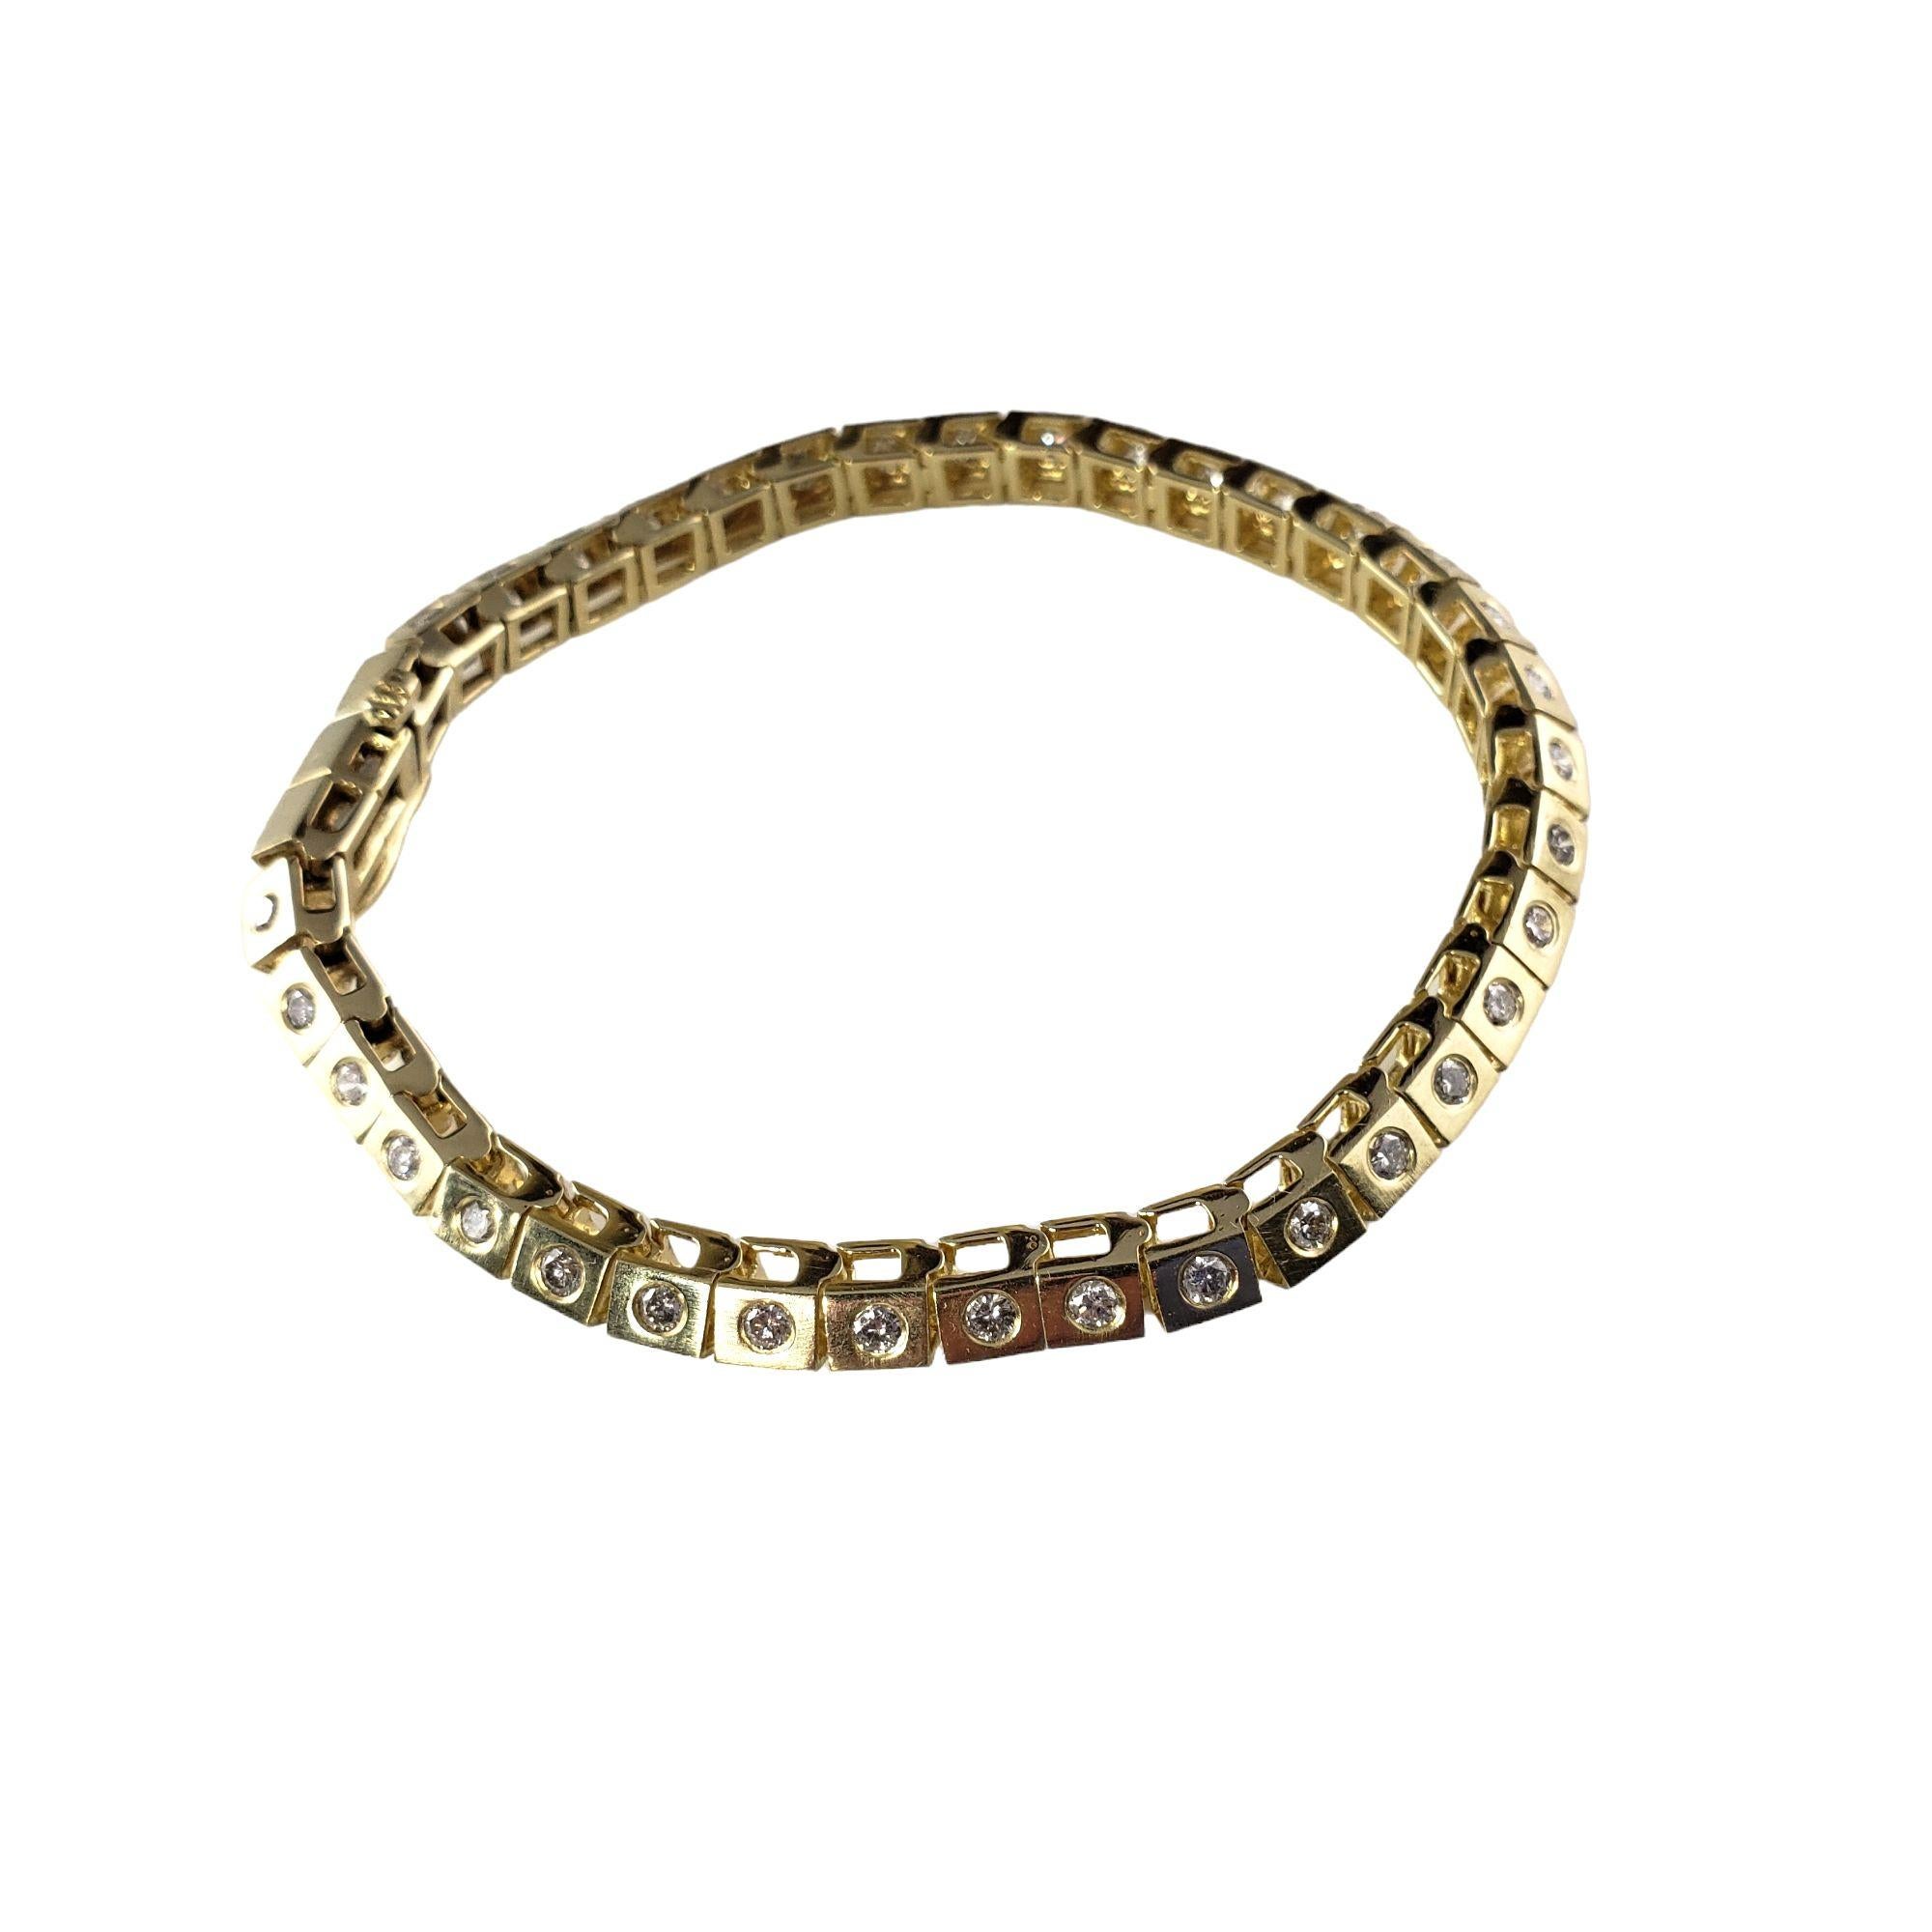 Vintage Bracelet en or jaune 14 carats et diamants-...

Ce bracelet étincelant est orné de 70 diamants ronds de taille brillante sertis dans de l'or jaune 14K classique. Largeur : 5 mm.

Poids total approximatif des diamants : 2.10 ct.

Couleur du